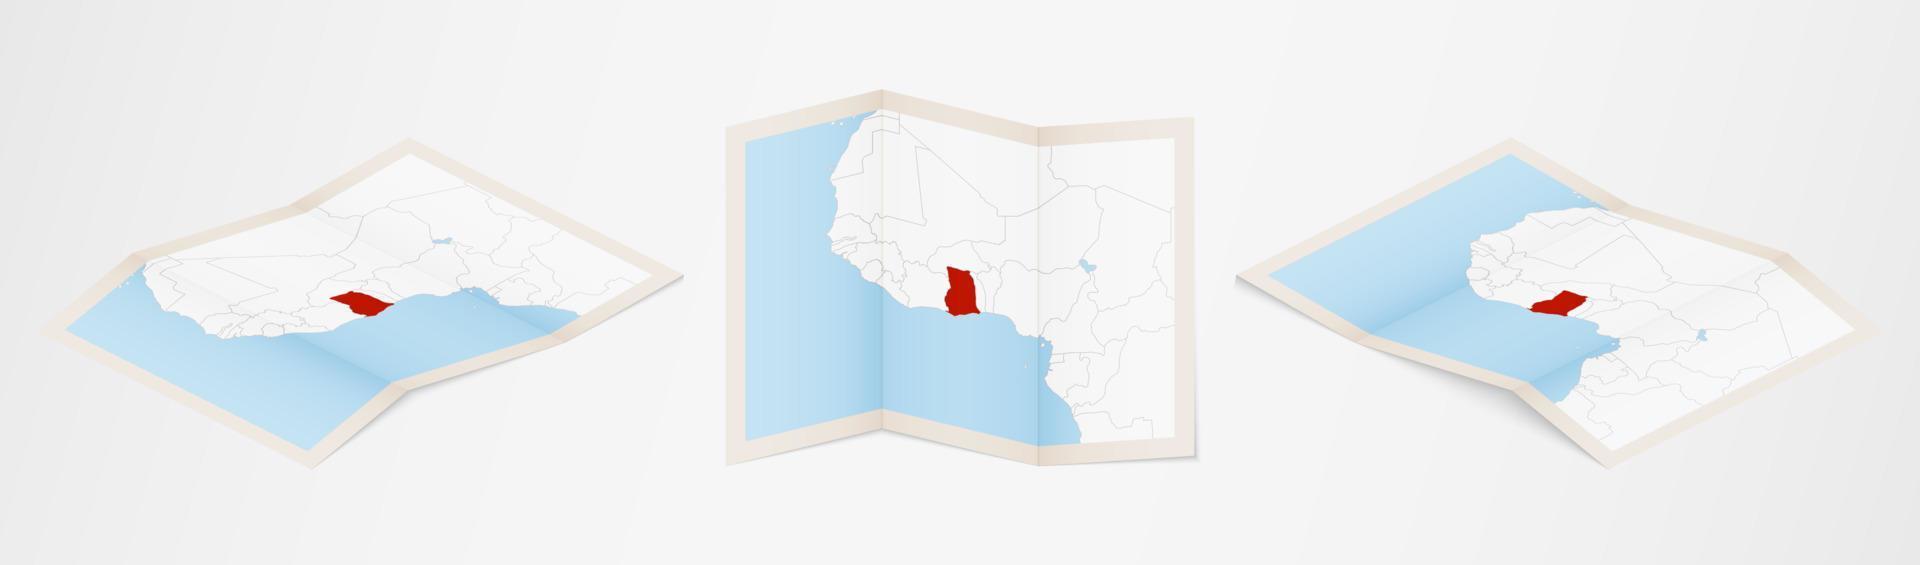 Faltkarte von Ghana in drei verschiedenen Versionen. vektor